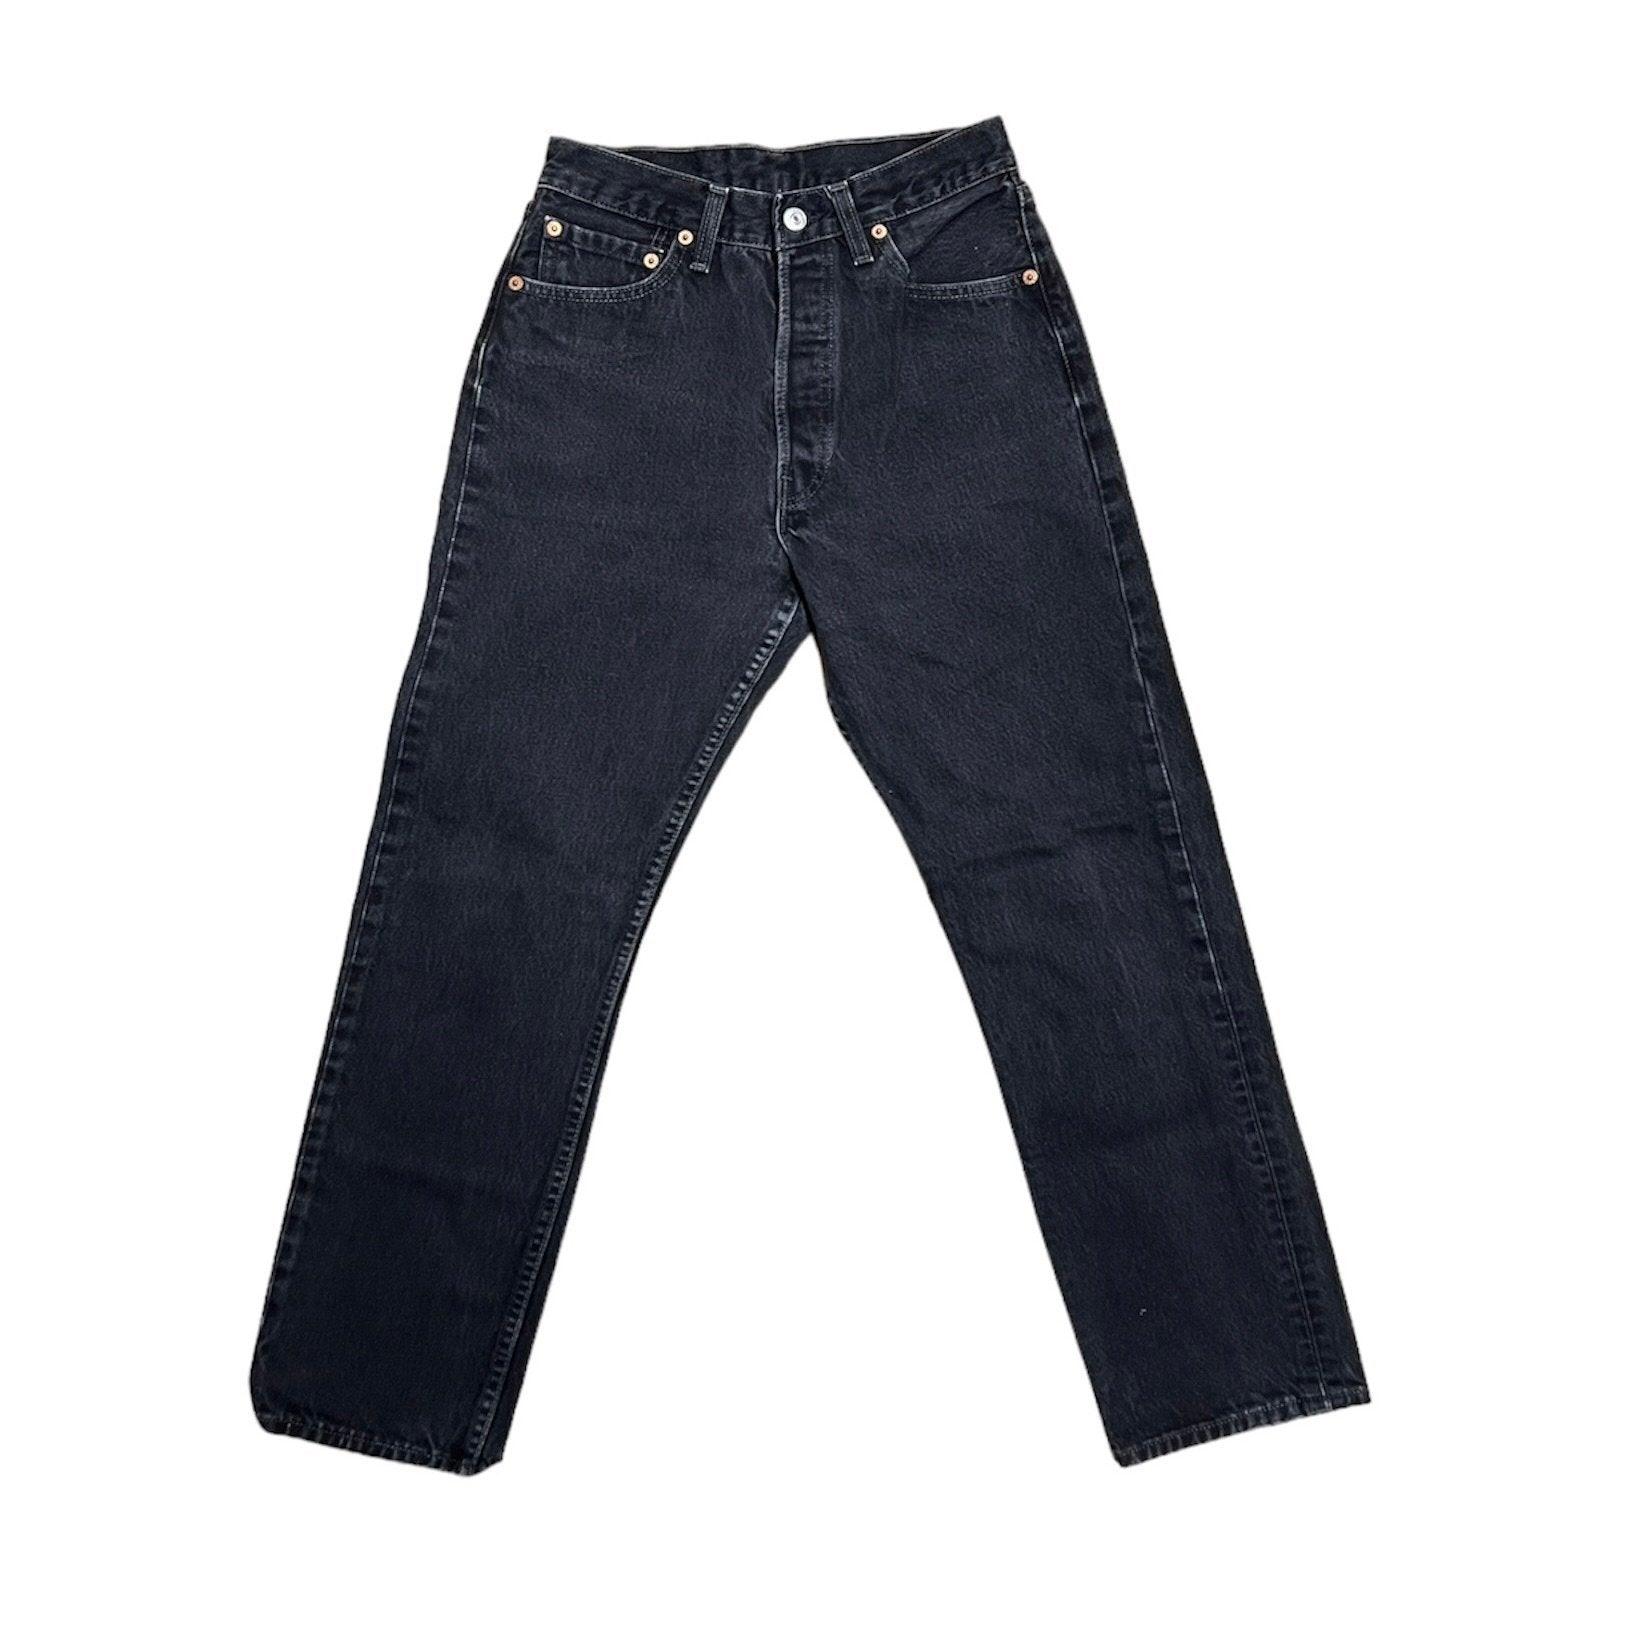 Vintage Levis Black Jeans (W27/L28)